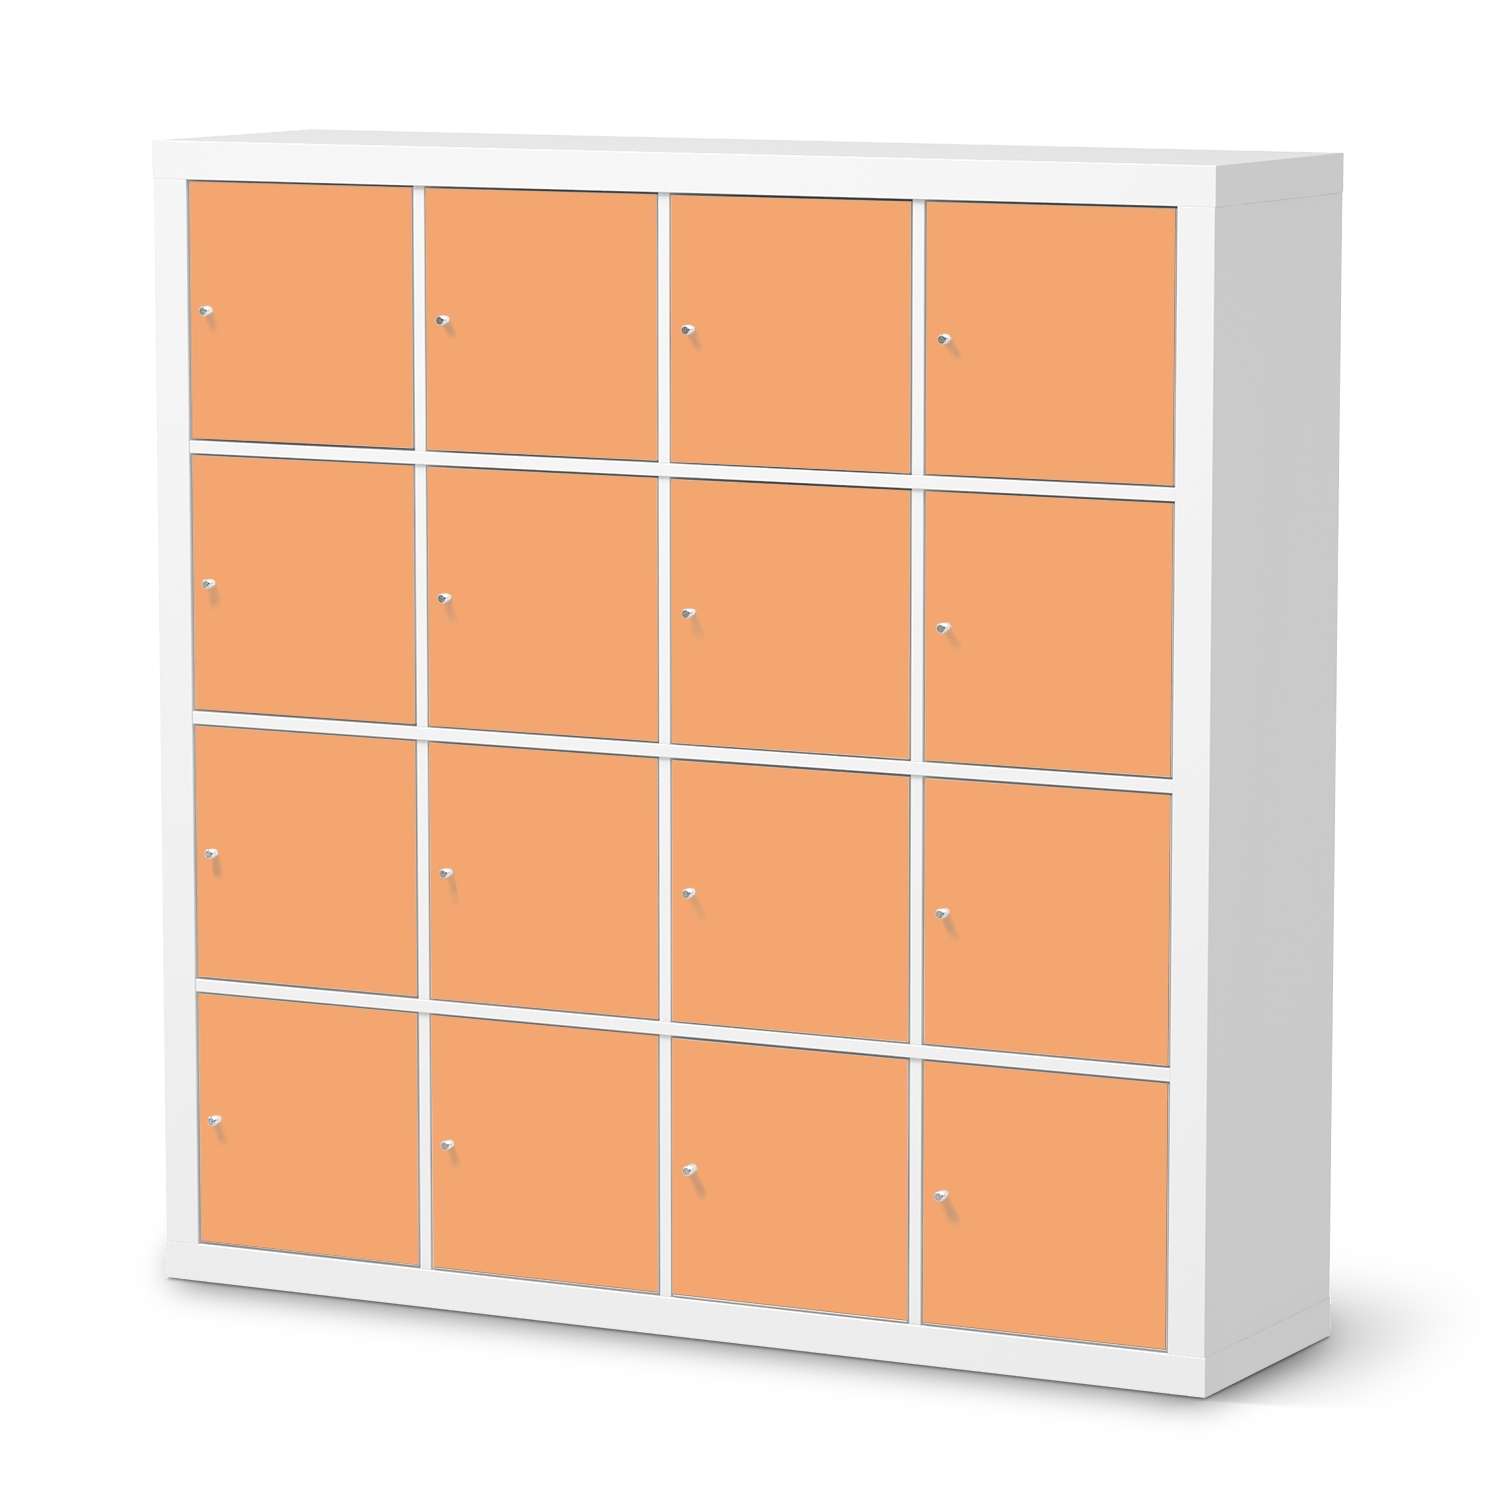 Selbstklebende Folie IKEA Expedit Regal 16 T?ren - Design: Orange Light von creatisto